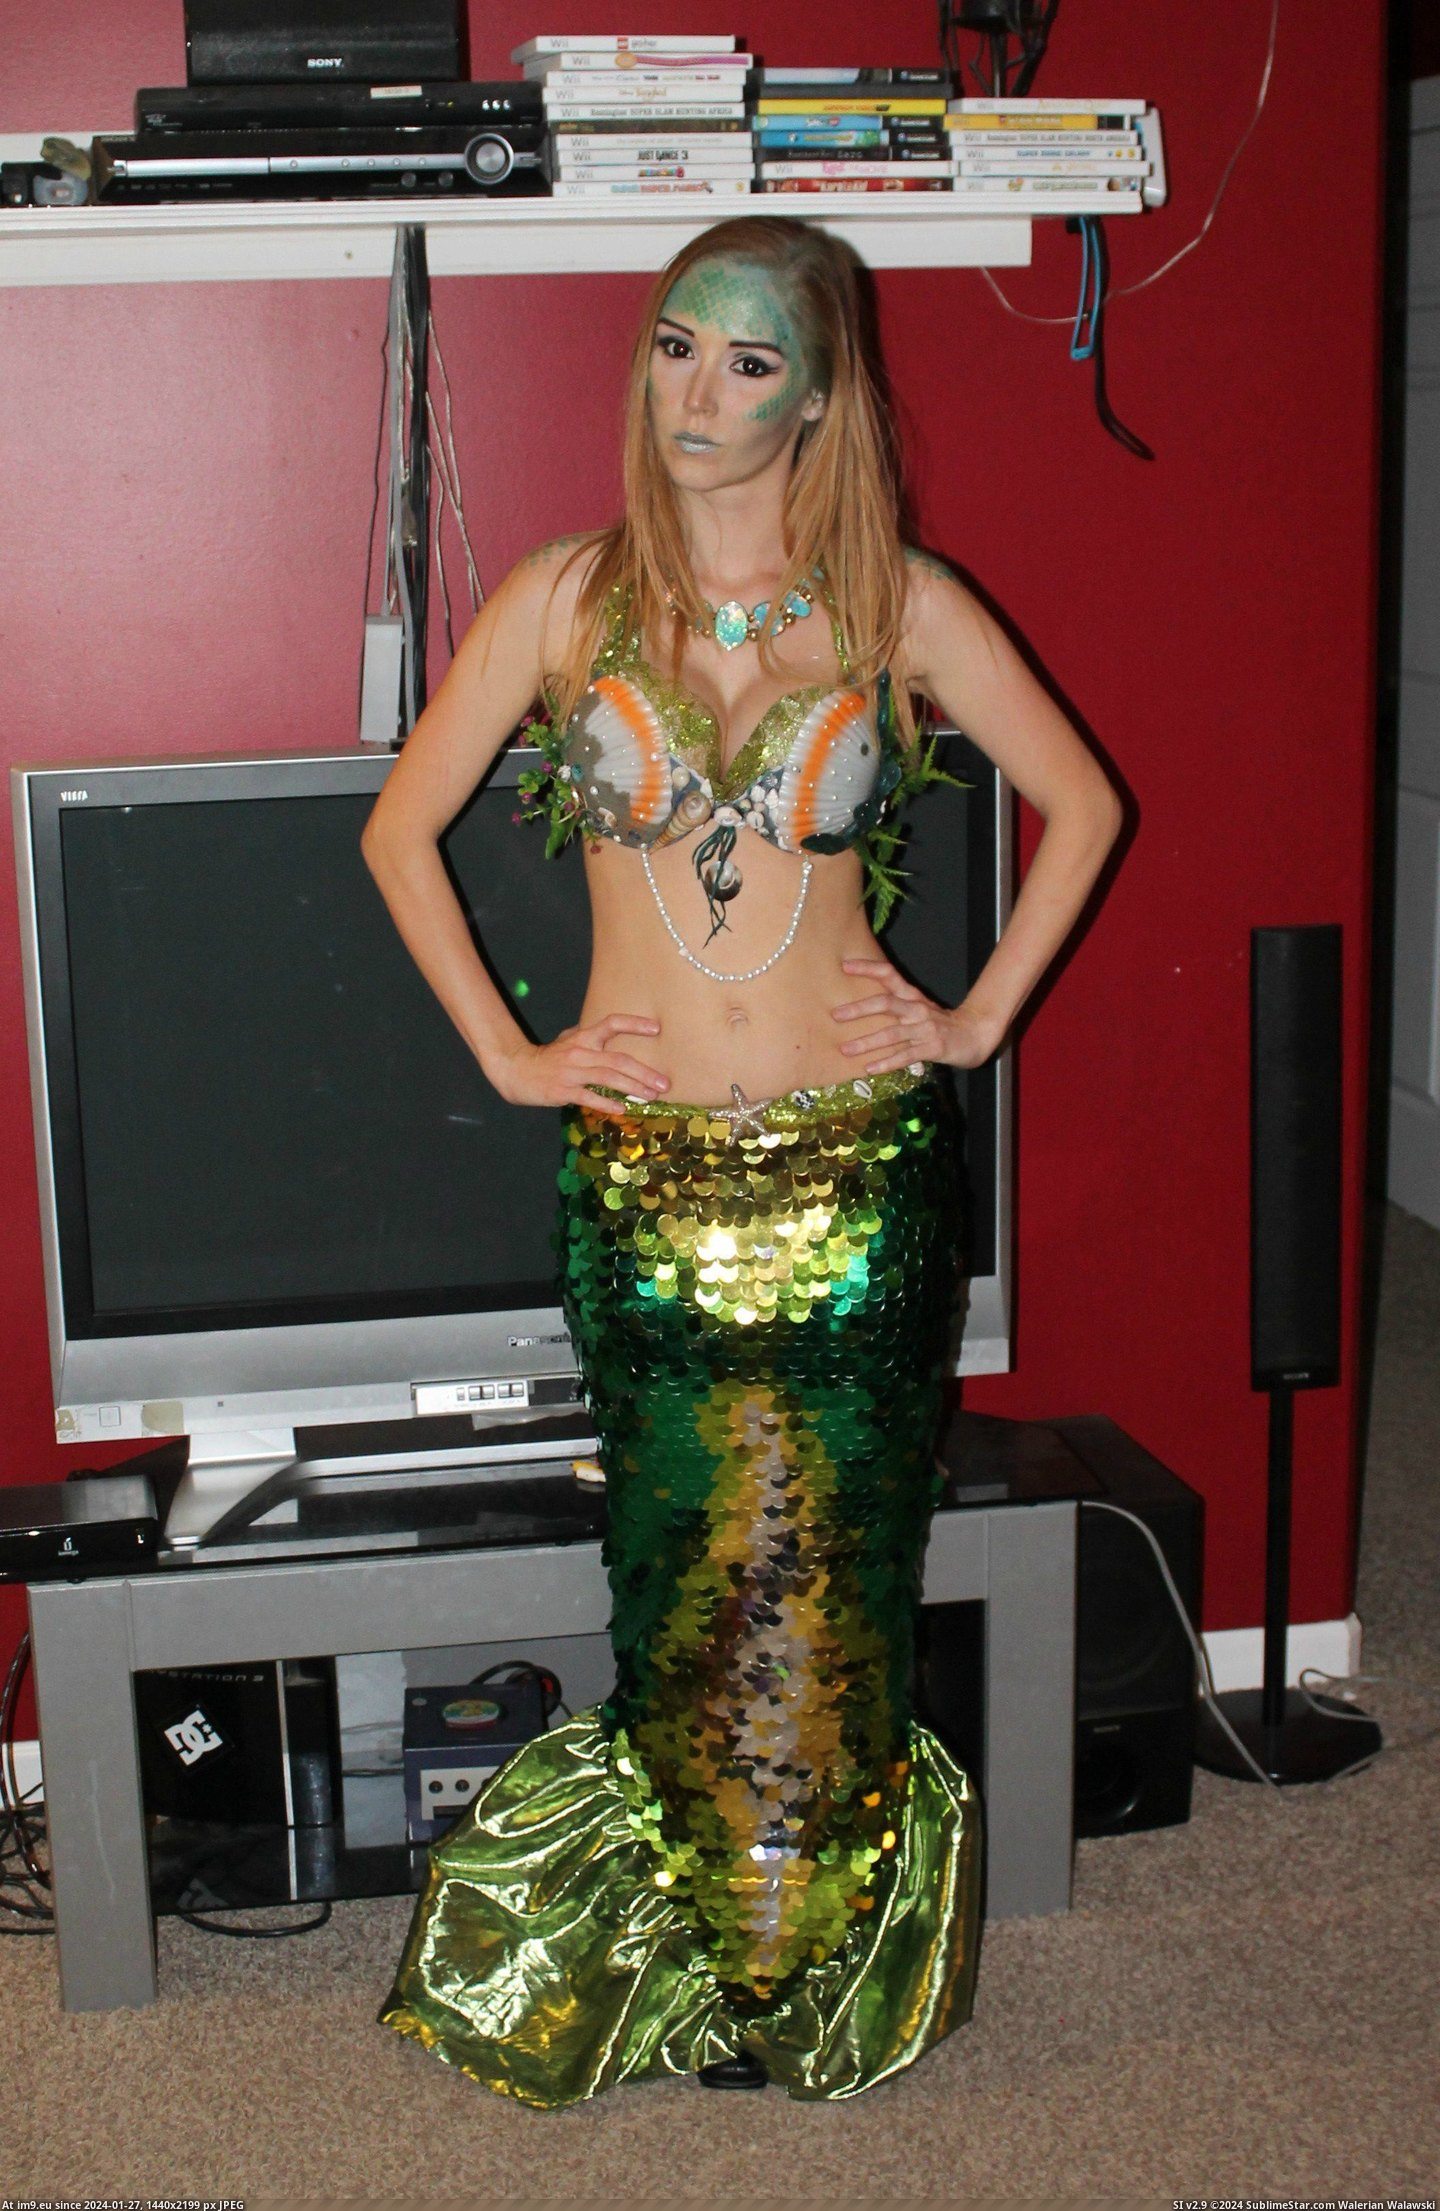 #Costume #Homemade #Mermaid [Pics] My homemade mermaid costume! 3 Pic. (Bild von album My r/PICS favs))